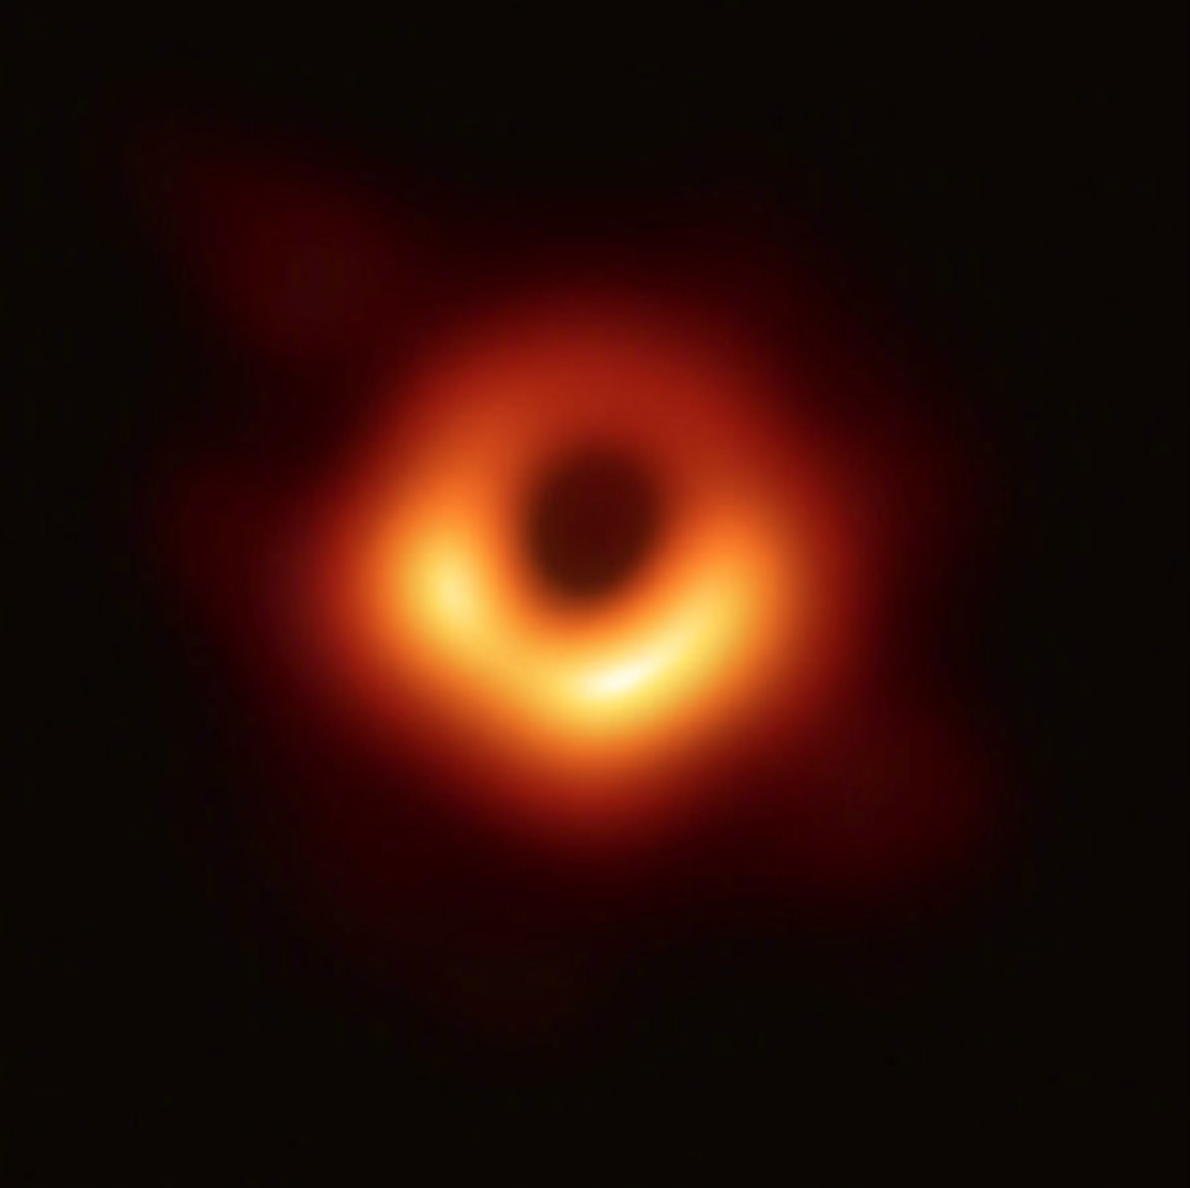  人类历史上首张黑洞照片。这个黑洞位于室女座超巨椭圆星系 M87中心，质量是太阳的 65 亿倍，距离地球大约 5500 万光年。图中，黑色的部分为黑洞投下的一个「阴影」，而外部明亮的部分是绕黑洞高速旋转的吸积盘。 